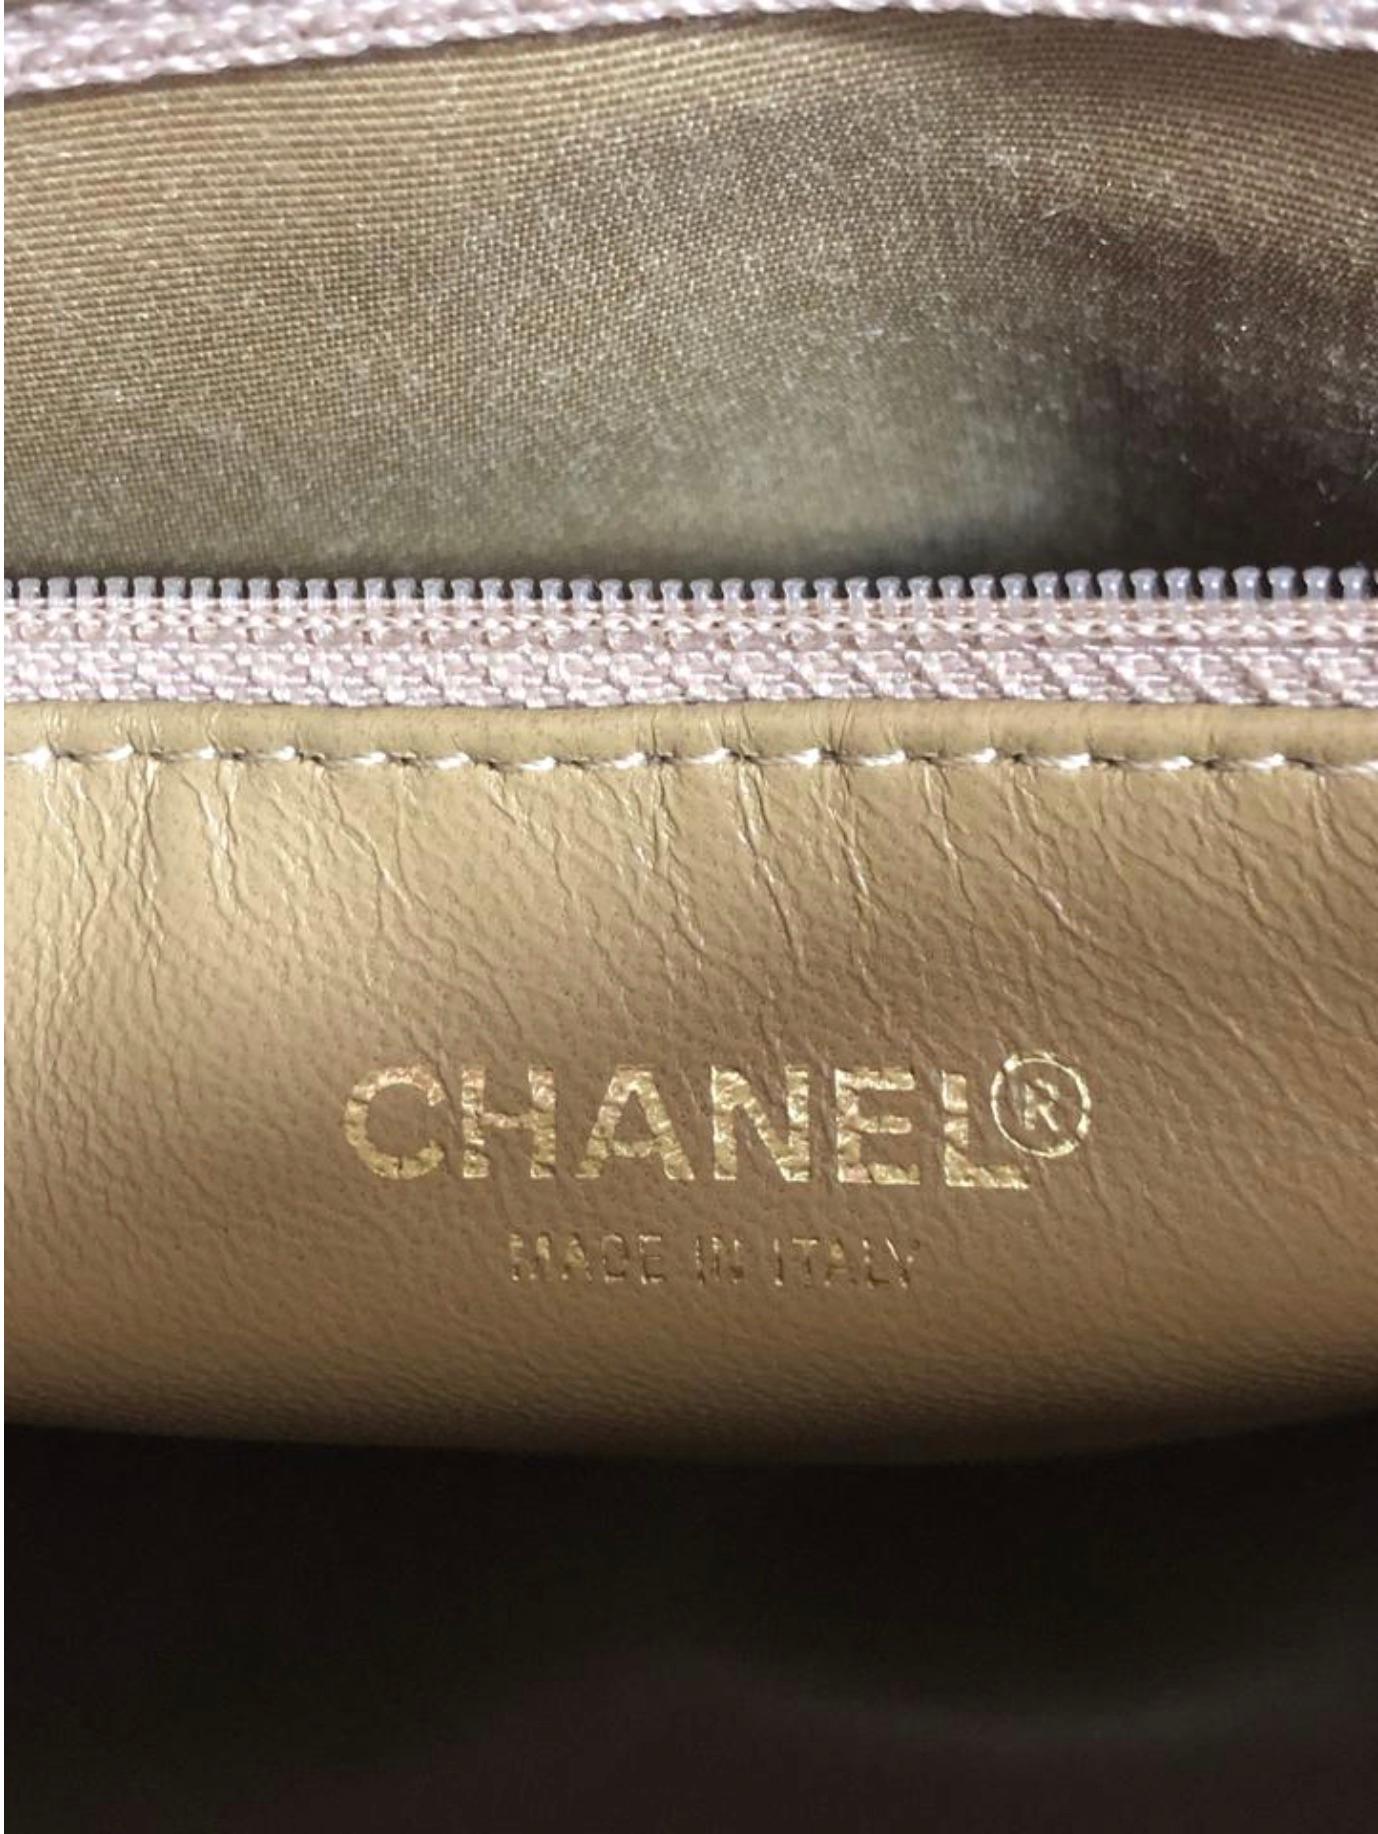 Chanel Caviar Leather Medallion with Gold Hardware in Beige Shoulder Handbag For Sale 5